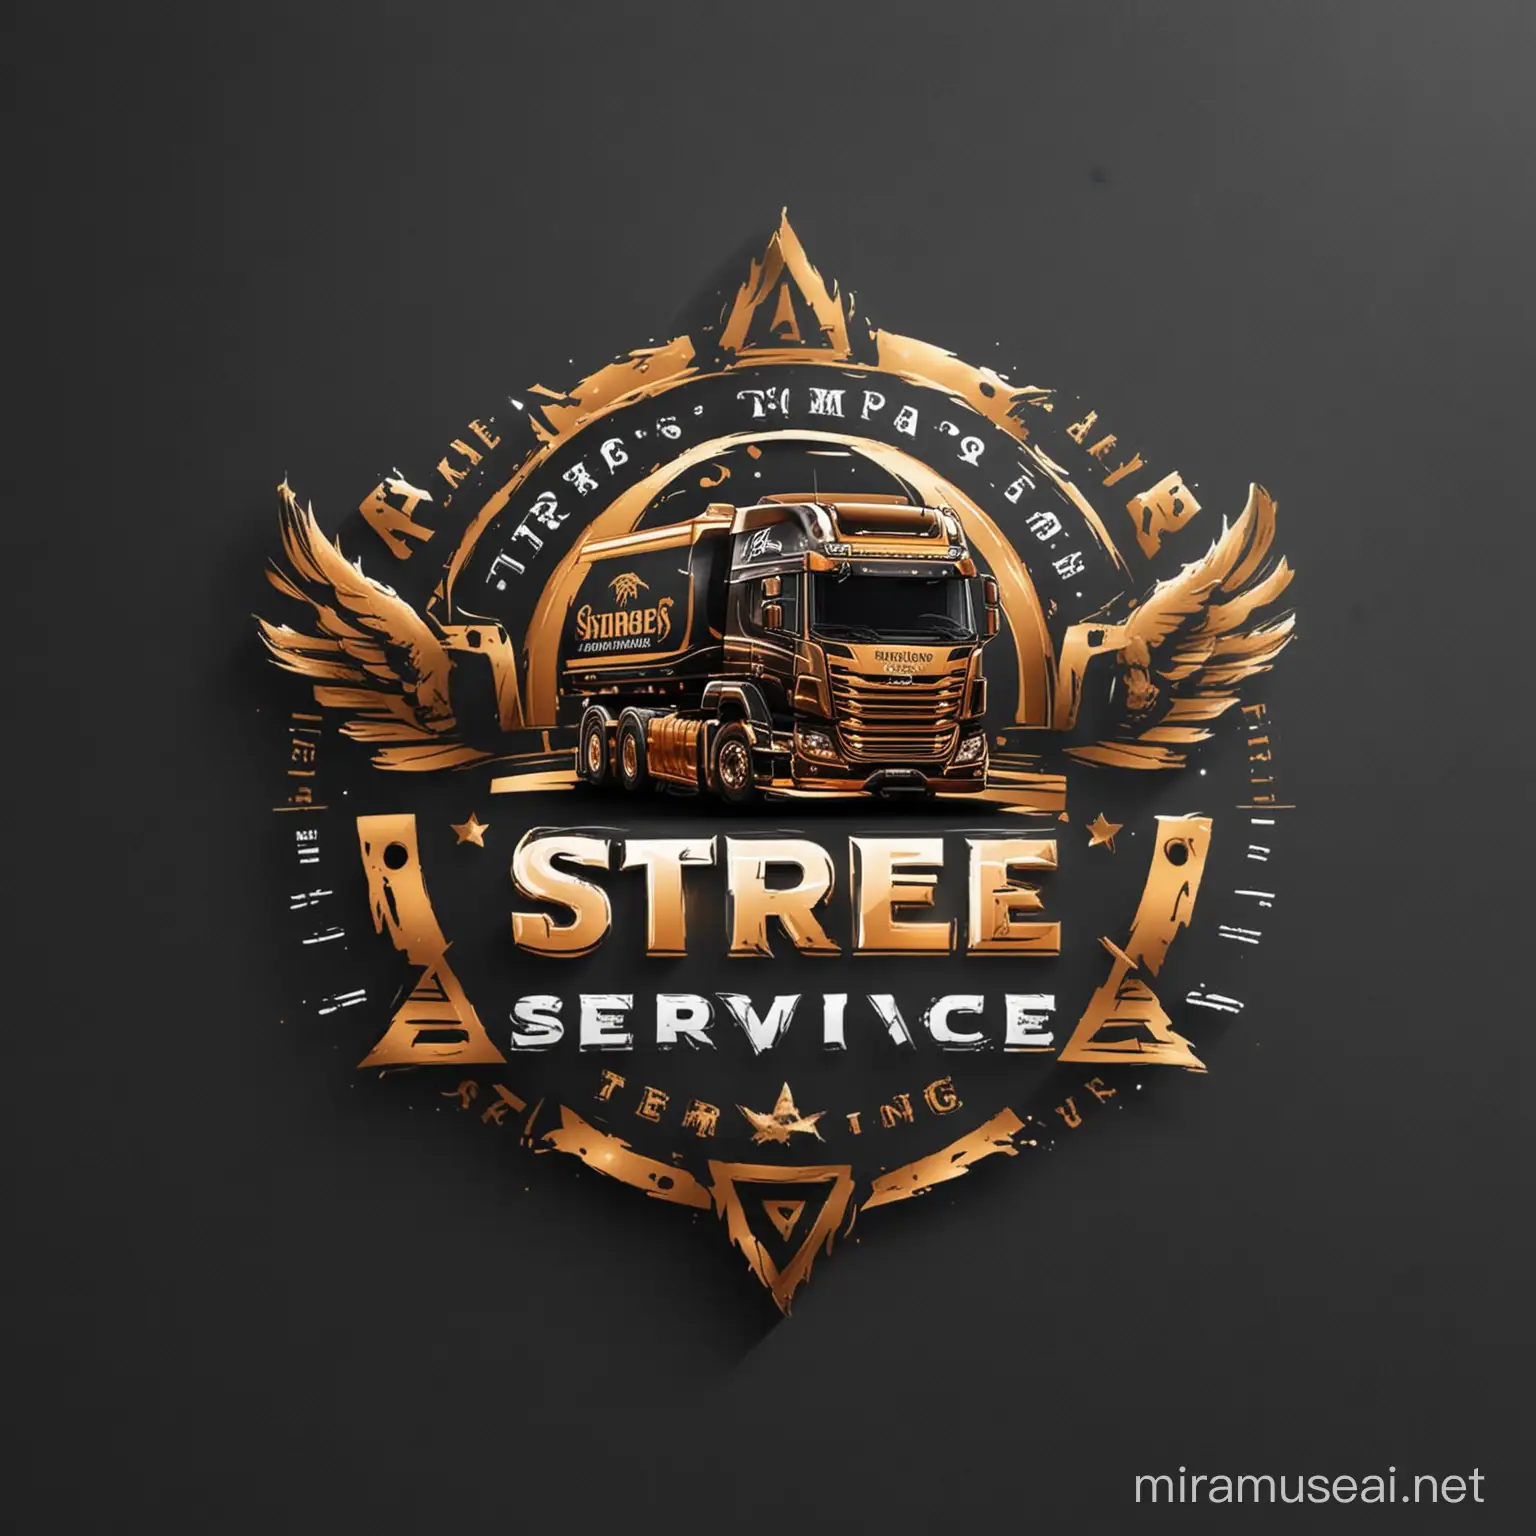  logo name  'shree tempo service' add truck  create a unique logo design